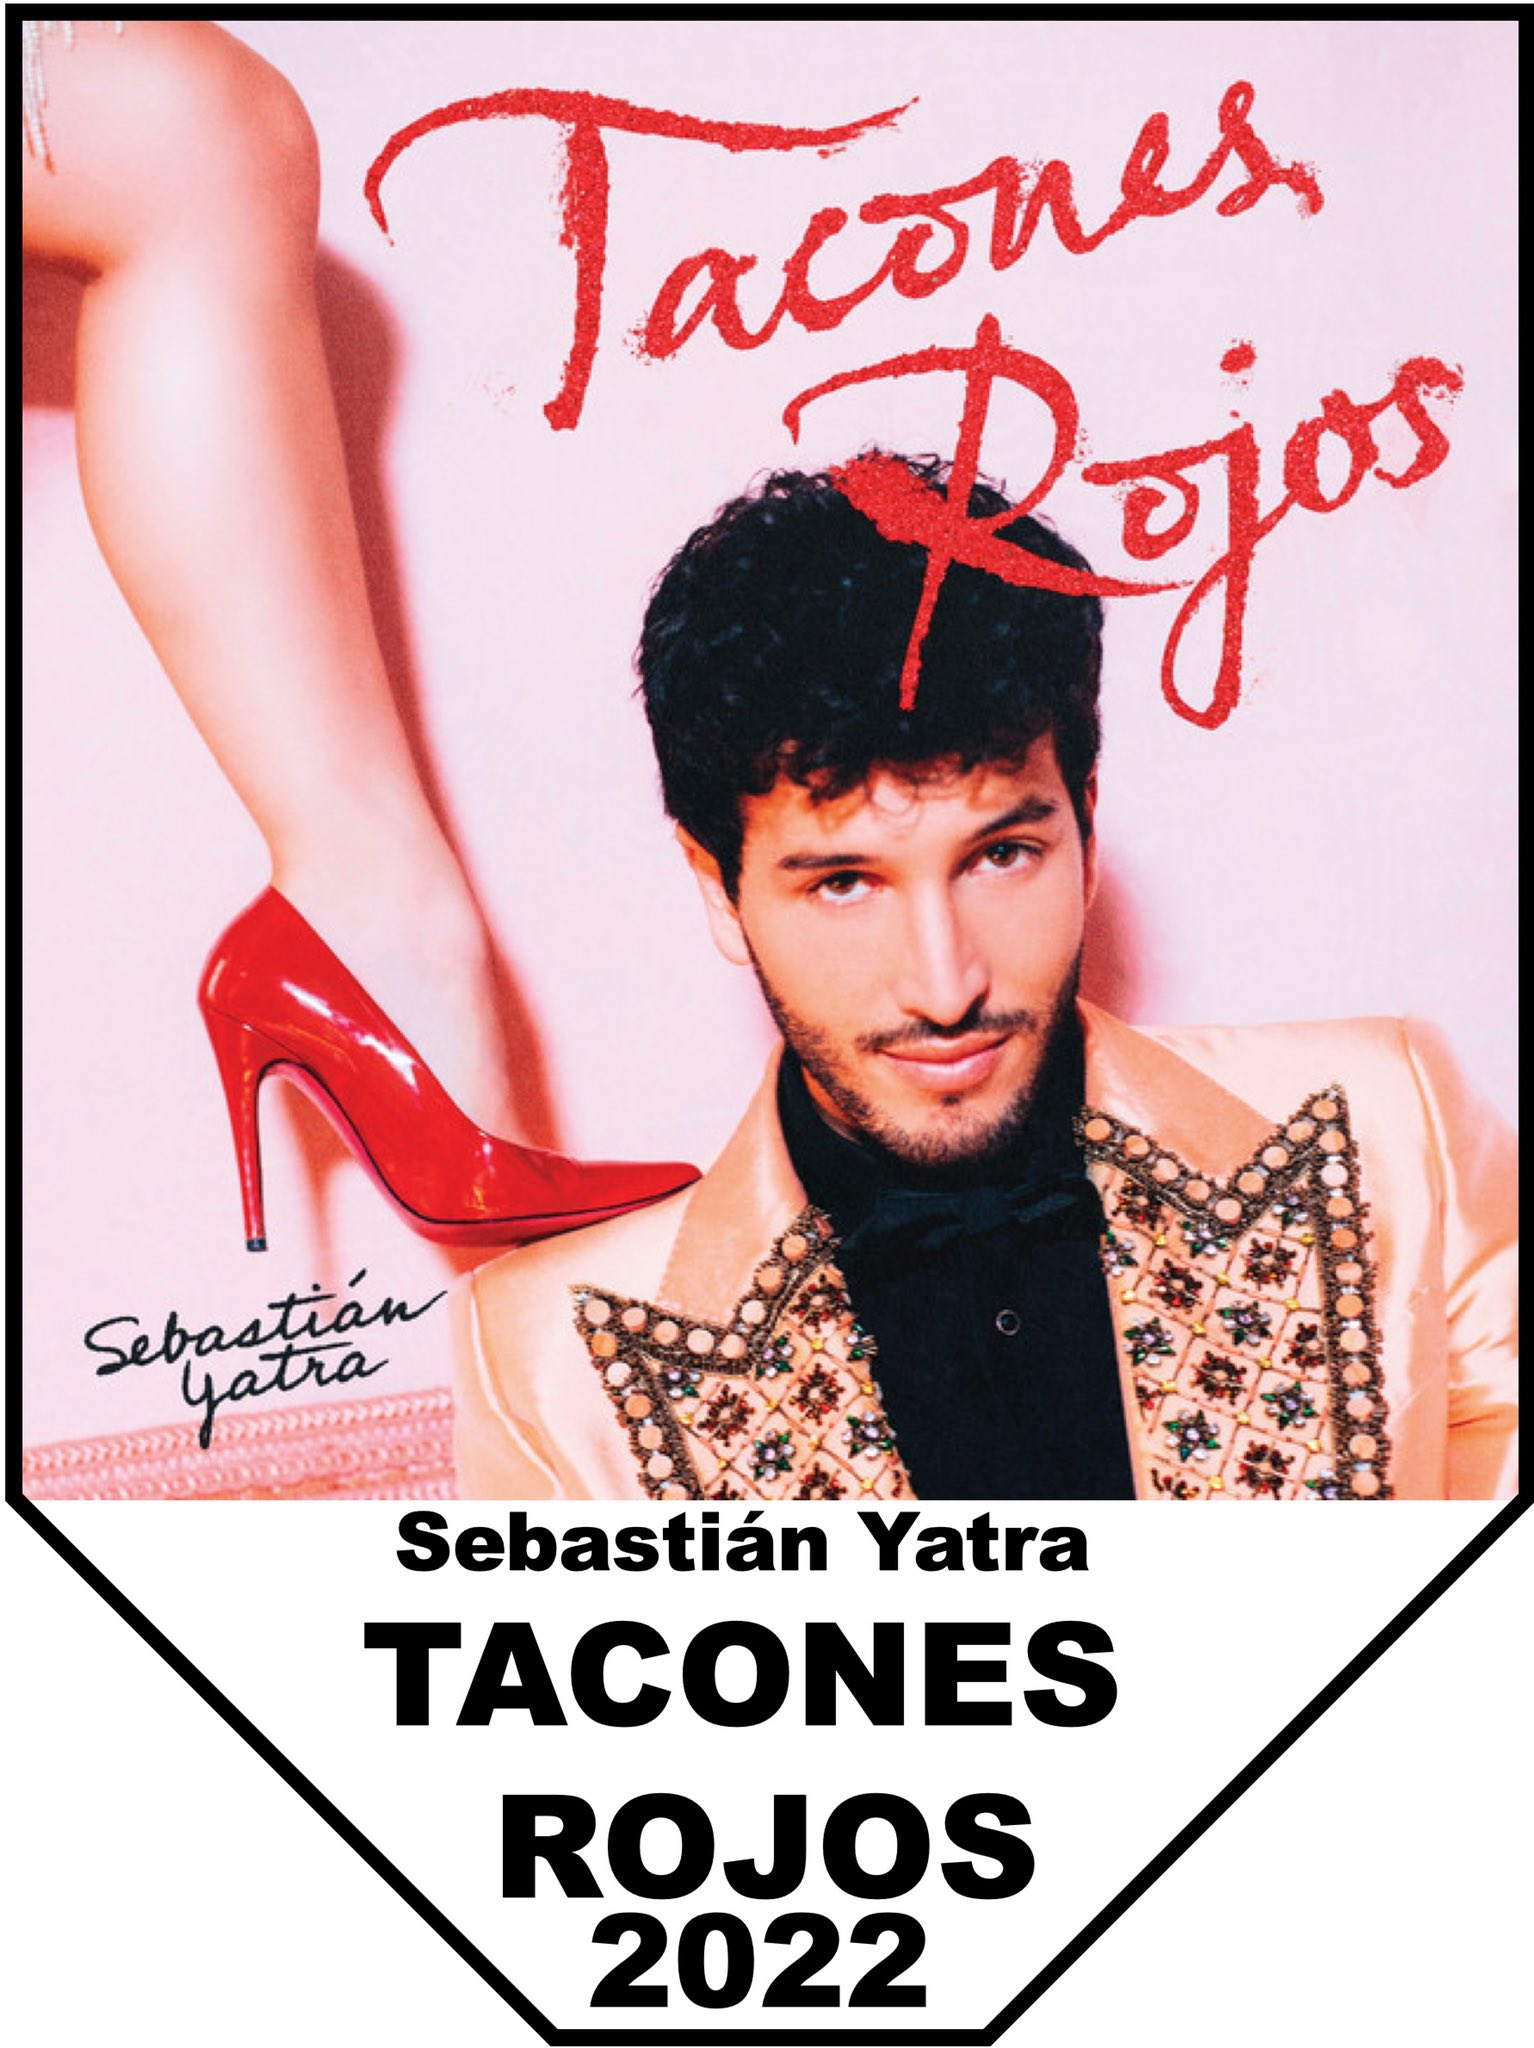 Señorita on Twitter: "Y la canción ganadora 🥁🥁🥁🥁 . . . TACONES ROJOS por Yatra 🎶👠 . . . Hope everyone enjoyed participating in this year's bracket! #SpanishPlansMMM #LocuraDeMarzo2022 #MarchMúsicaMadness https://t.co ...